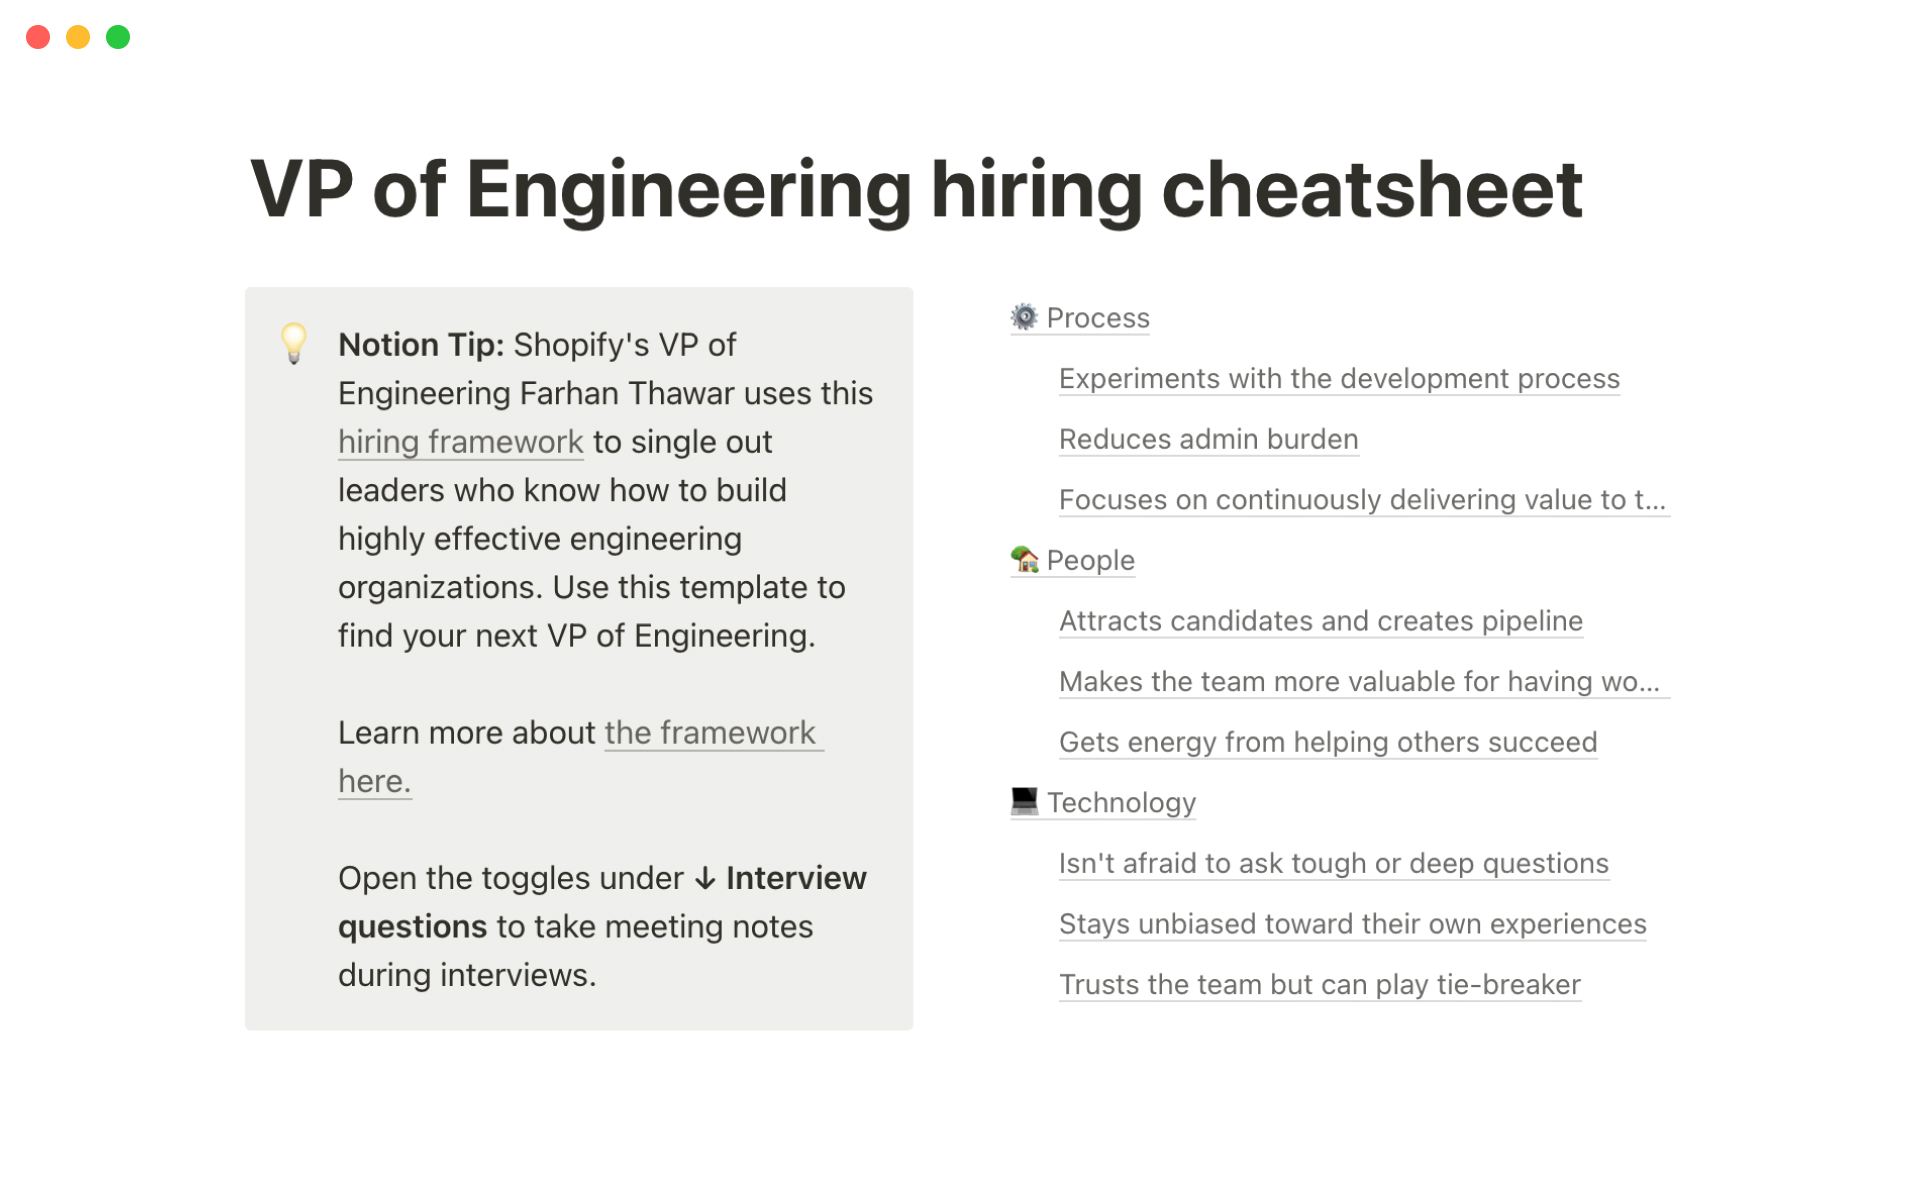 Vista previa de plantilla para Shopify's VP of Engineering hiring cheatsheet